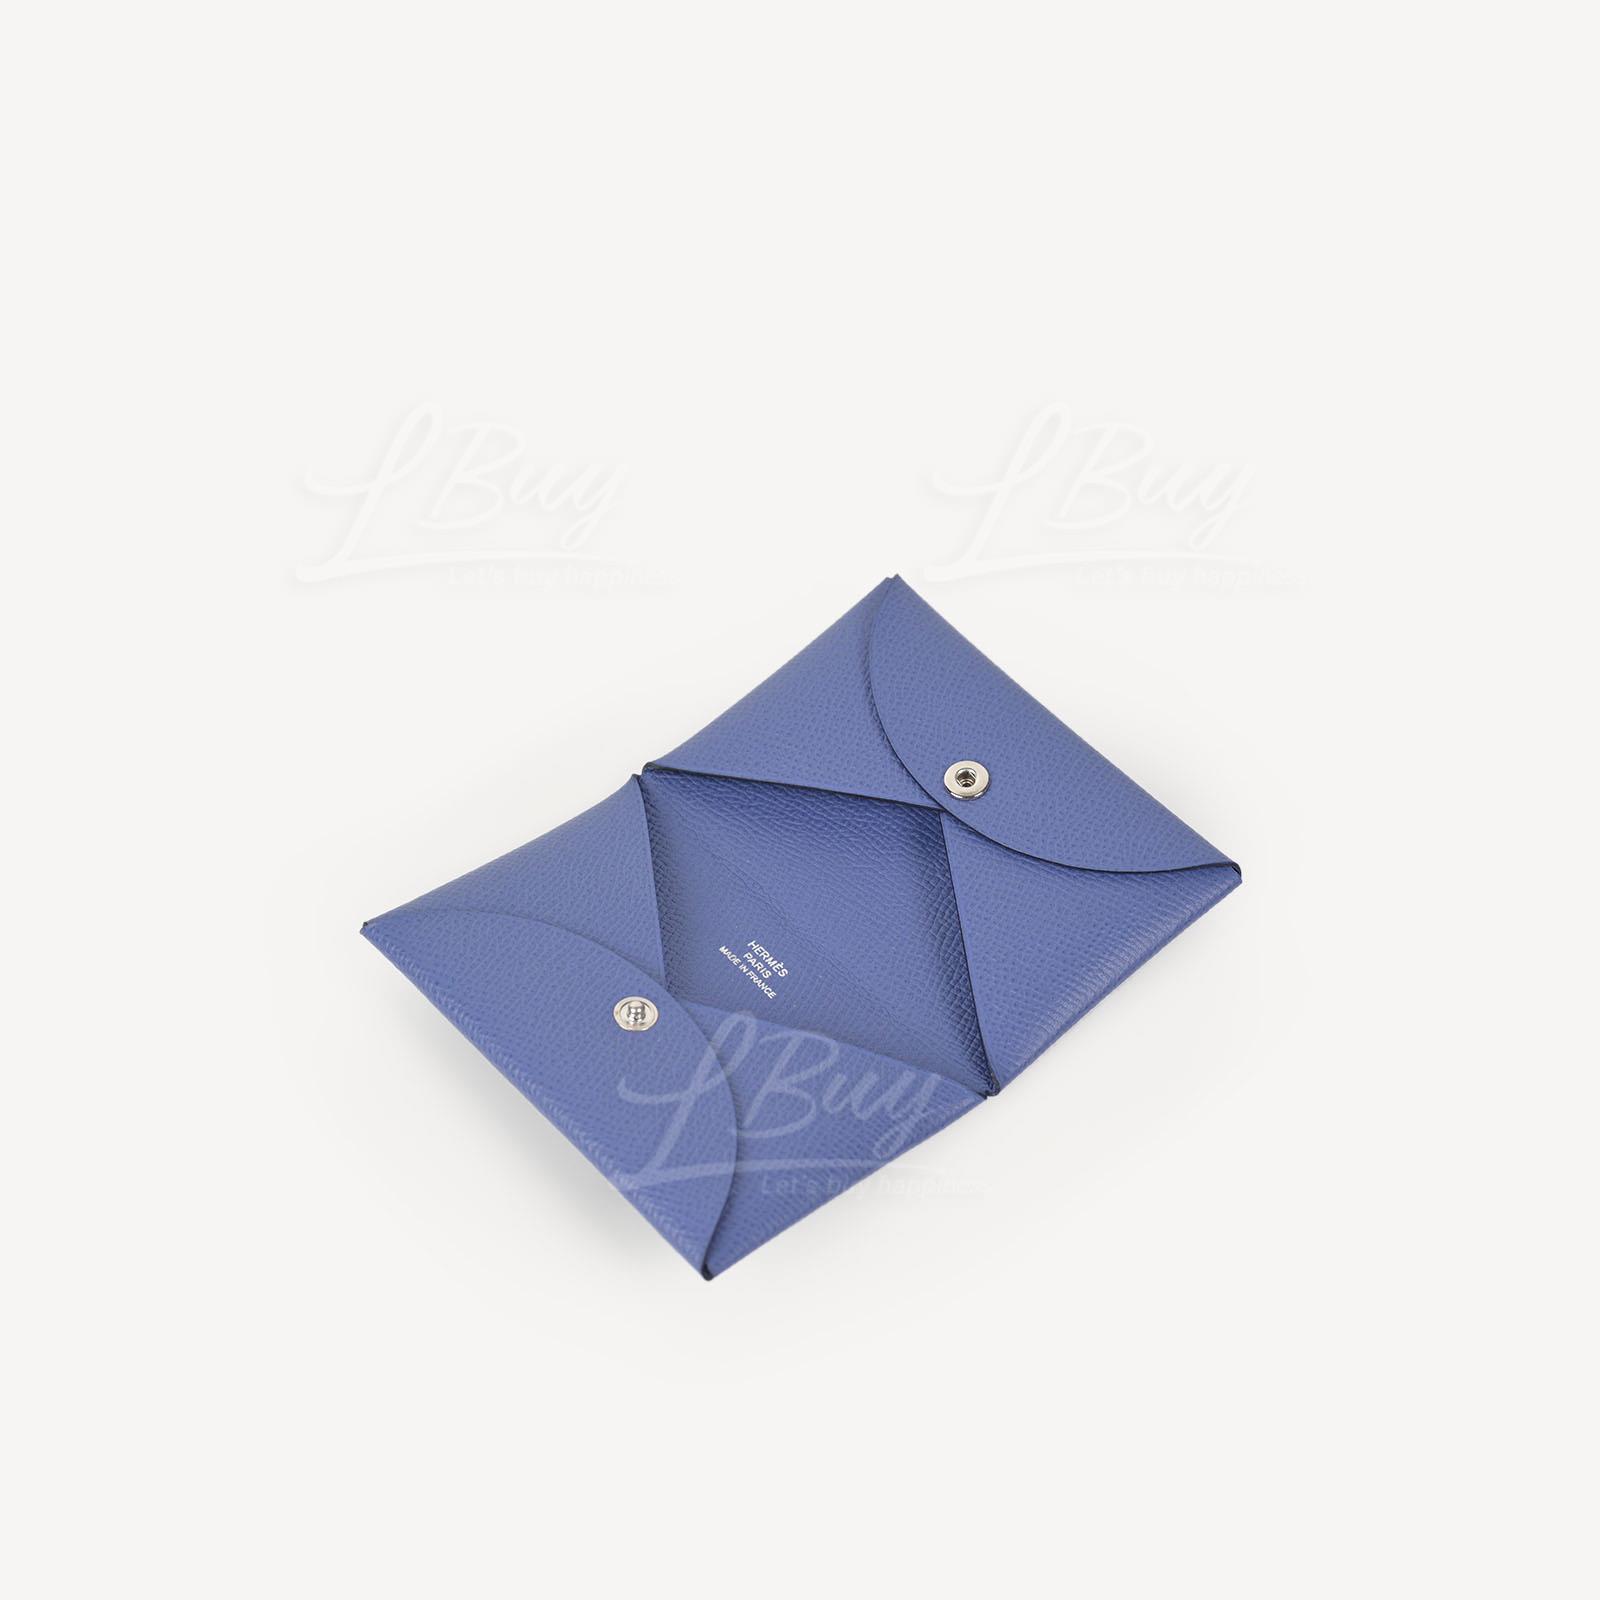 Hermes Calvi Card Holder Bleu Nuit